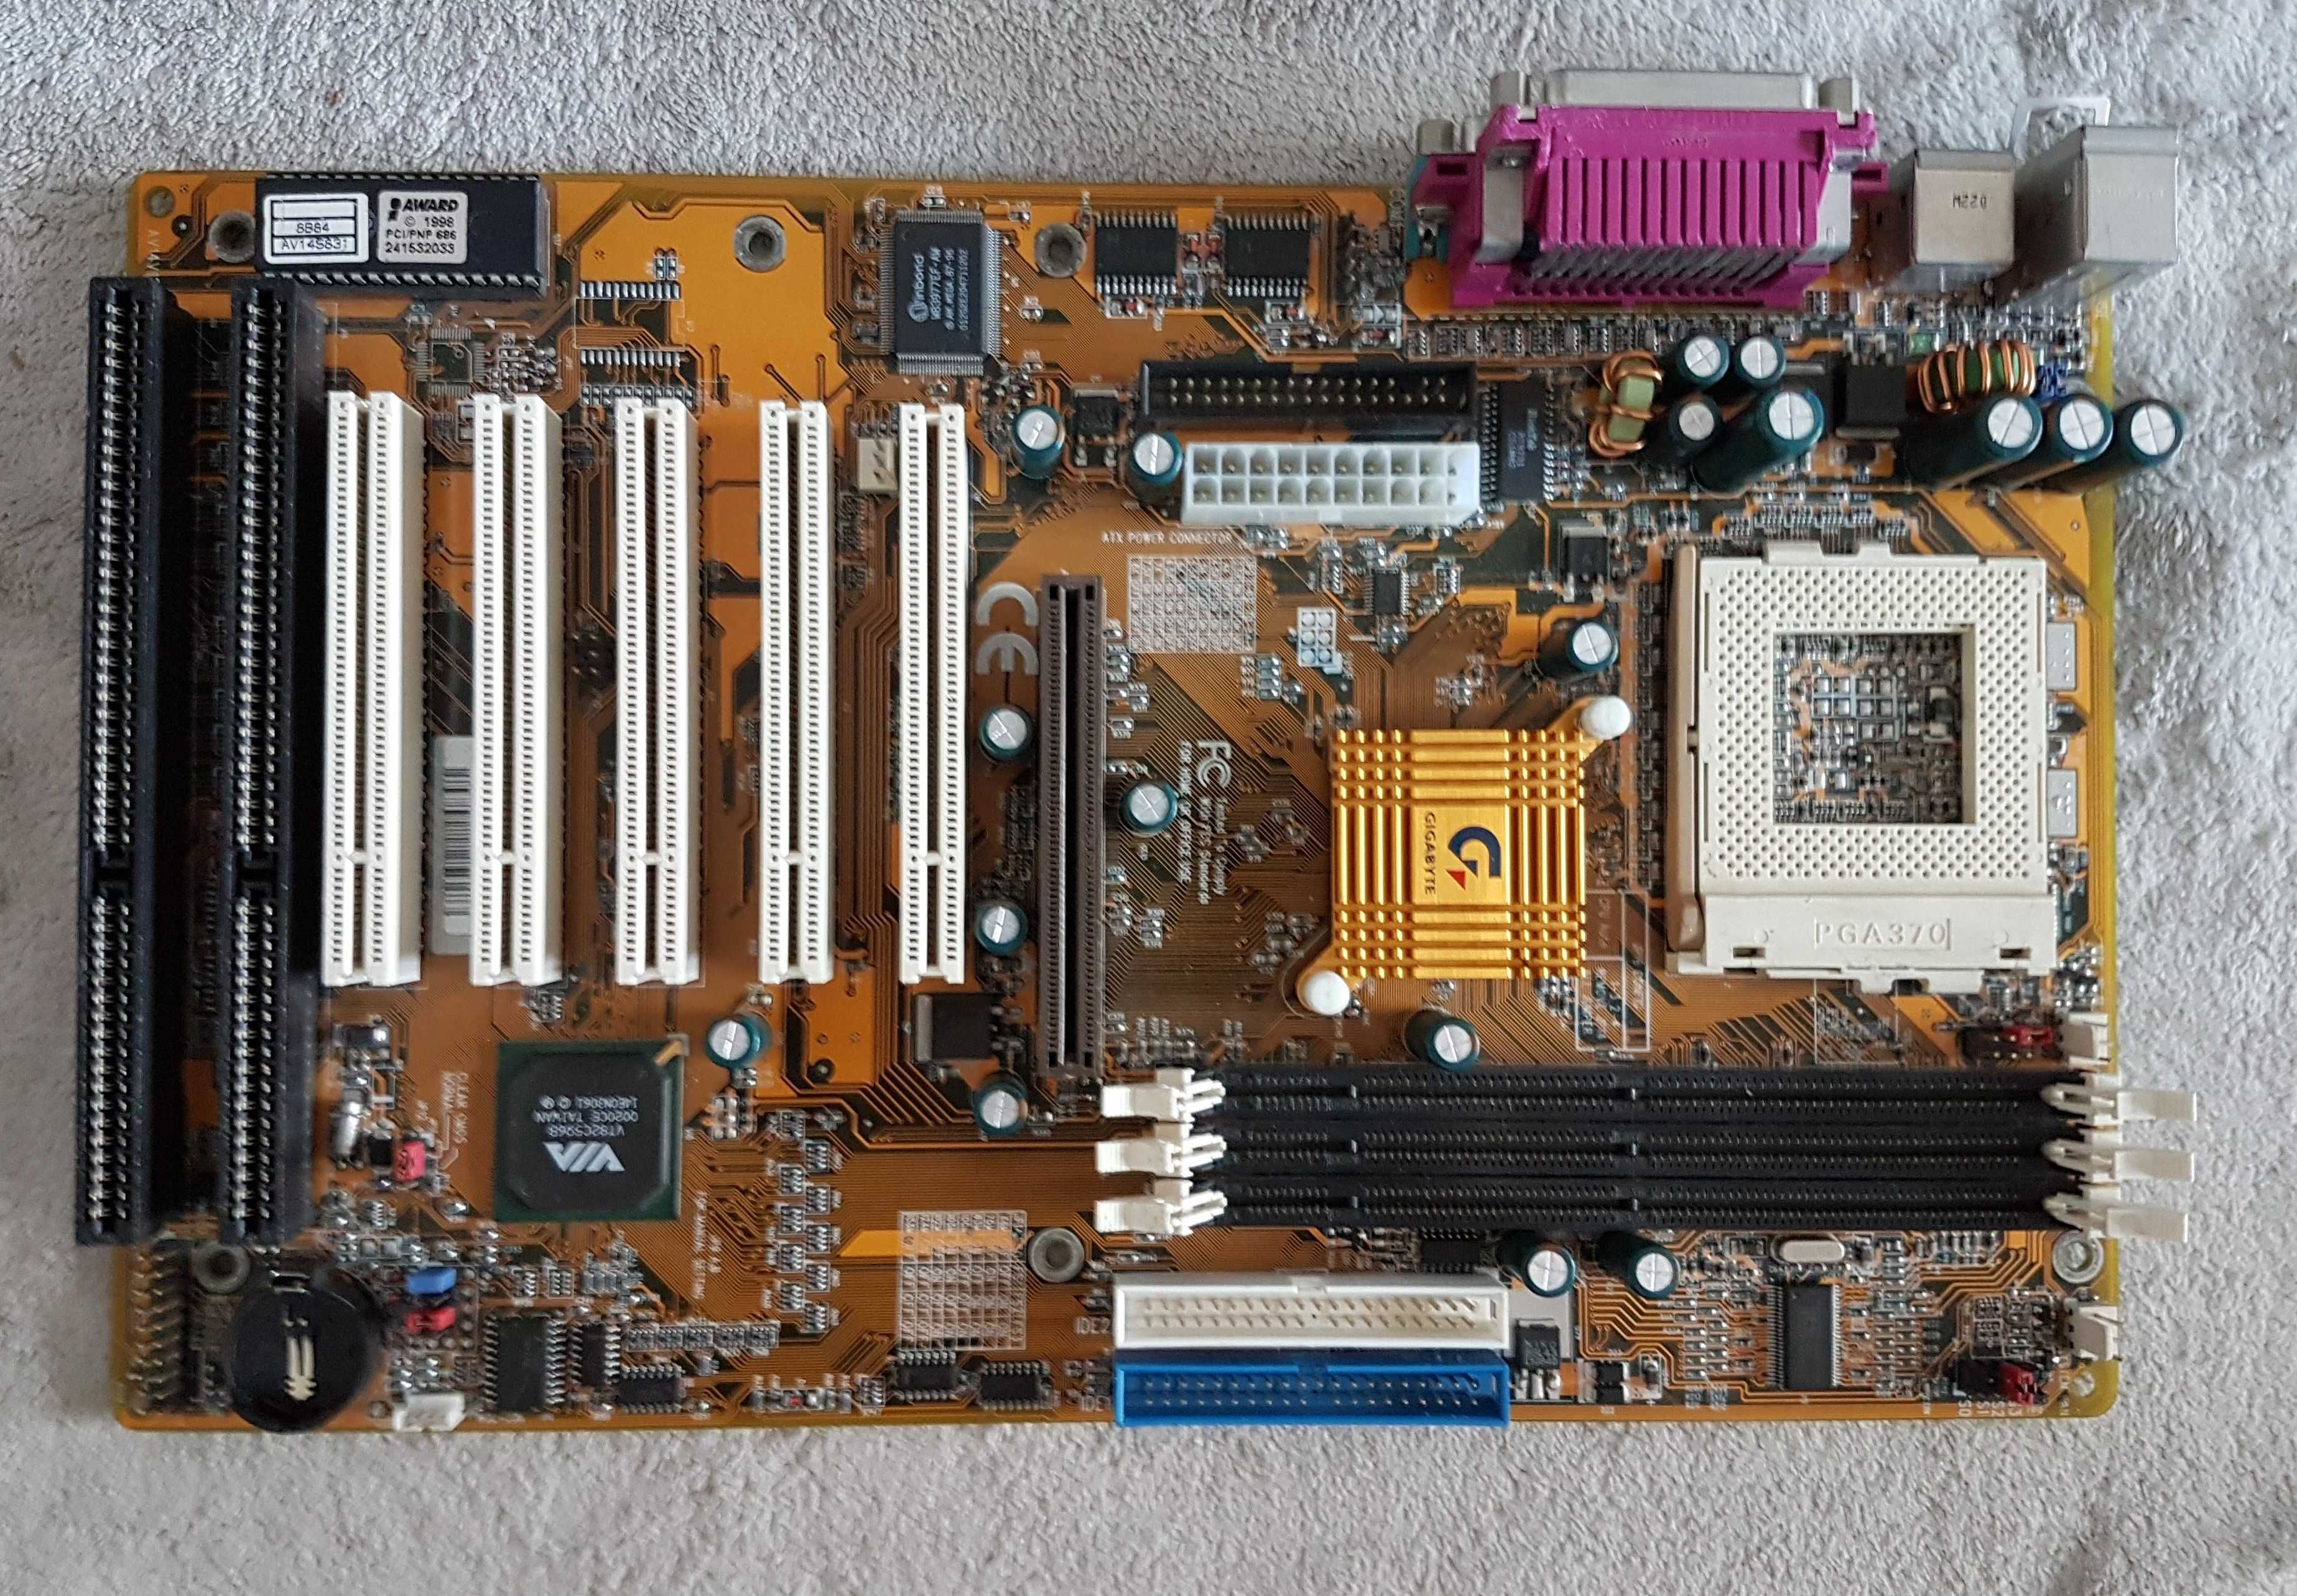 Stare płyty główne 286 PC 386 PC 486 PC Pentium